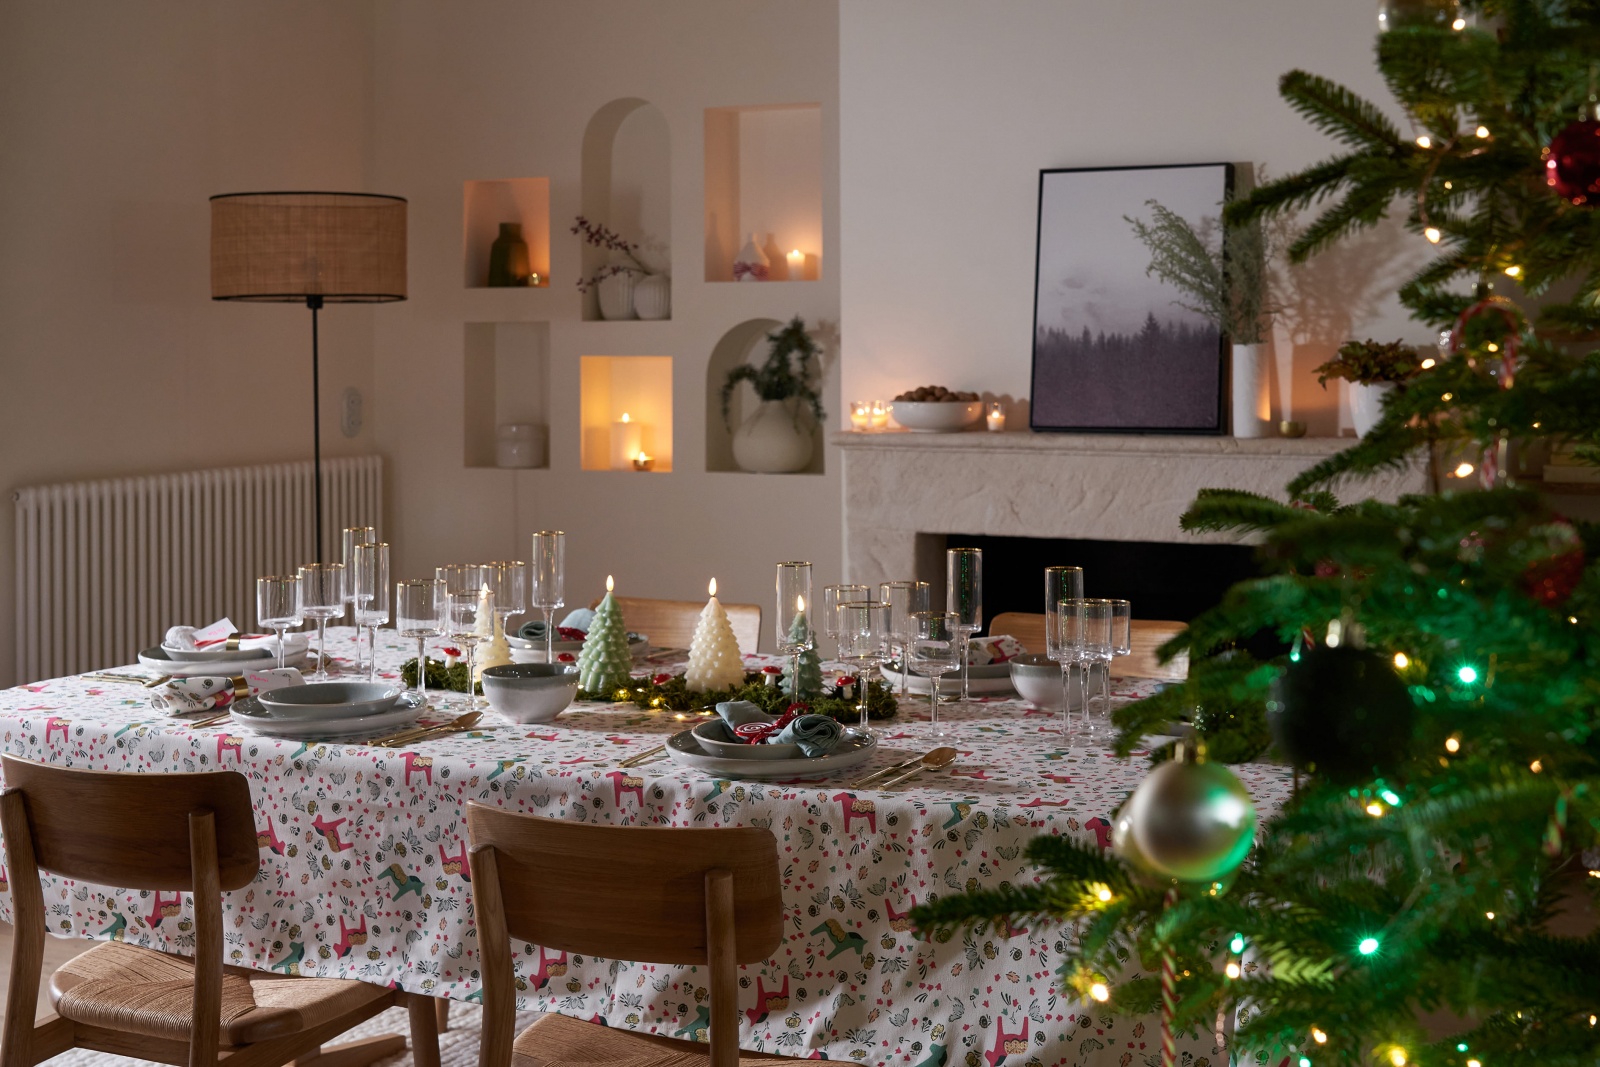 A La Redoute desafiou a designer de interiores Ana Antunes para nos deixar sugestões de decoração de Natal para todos os gostos. 